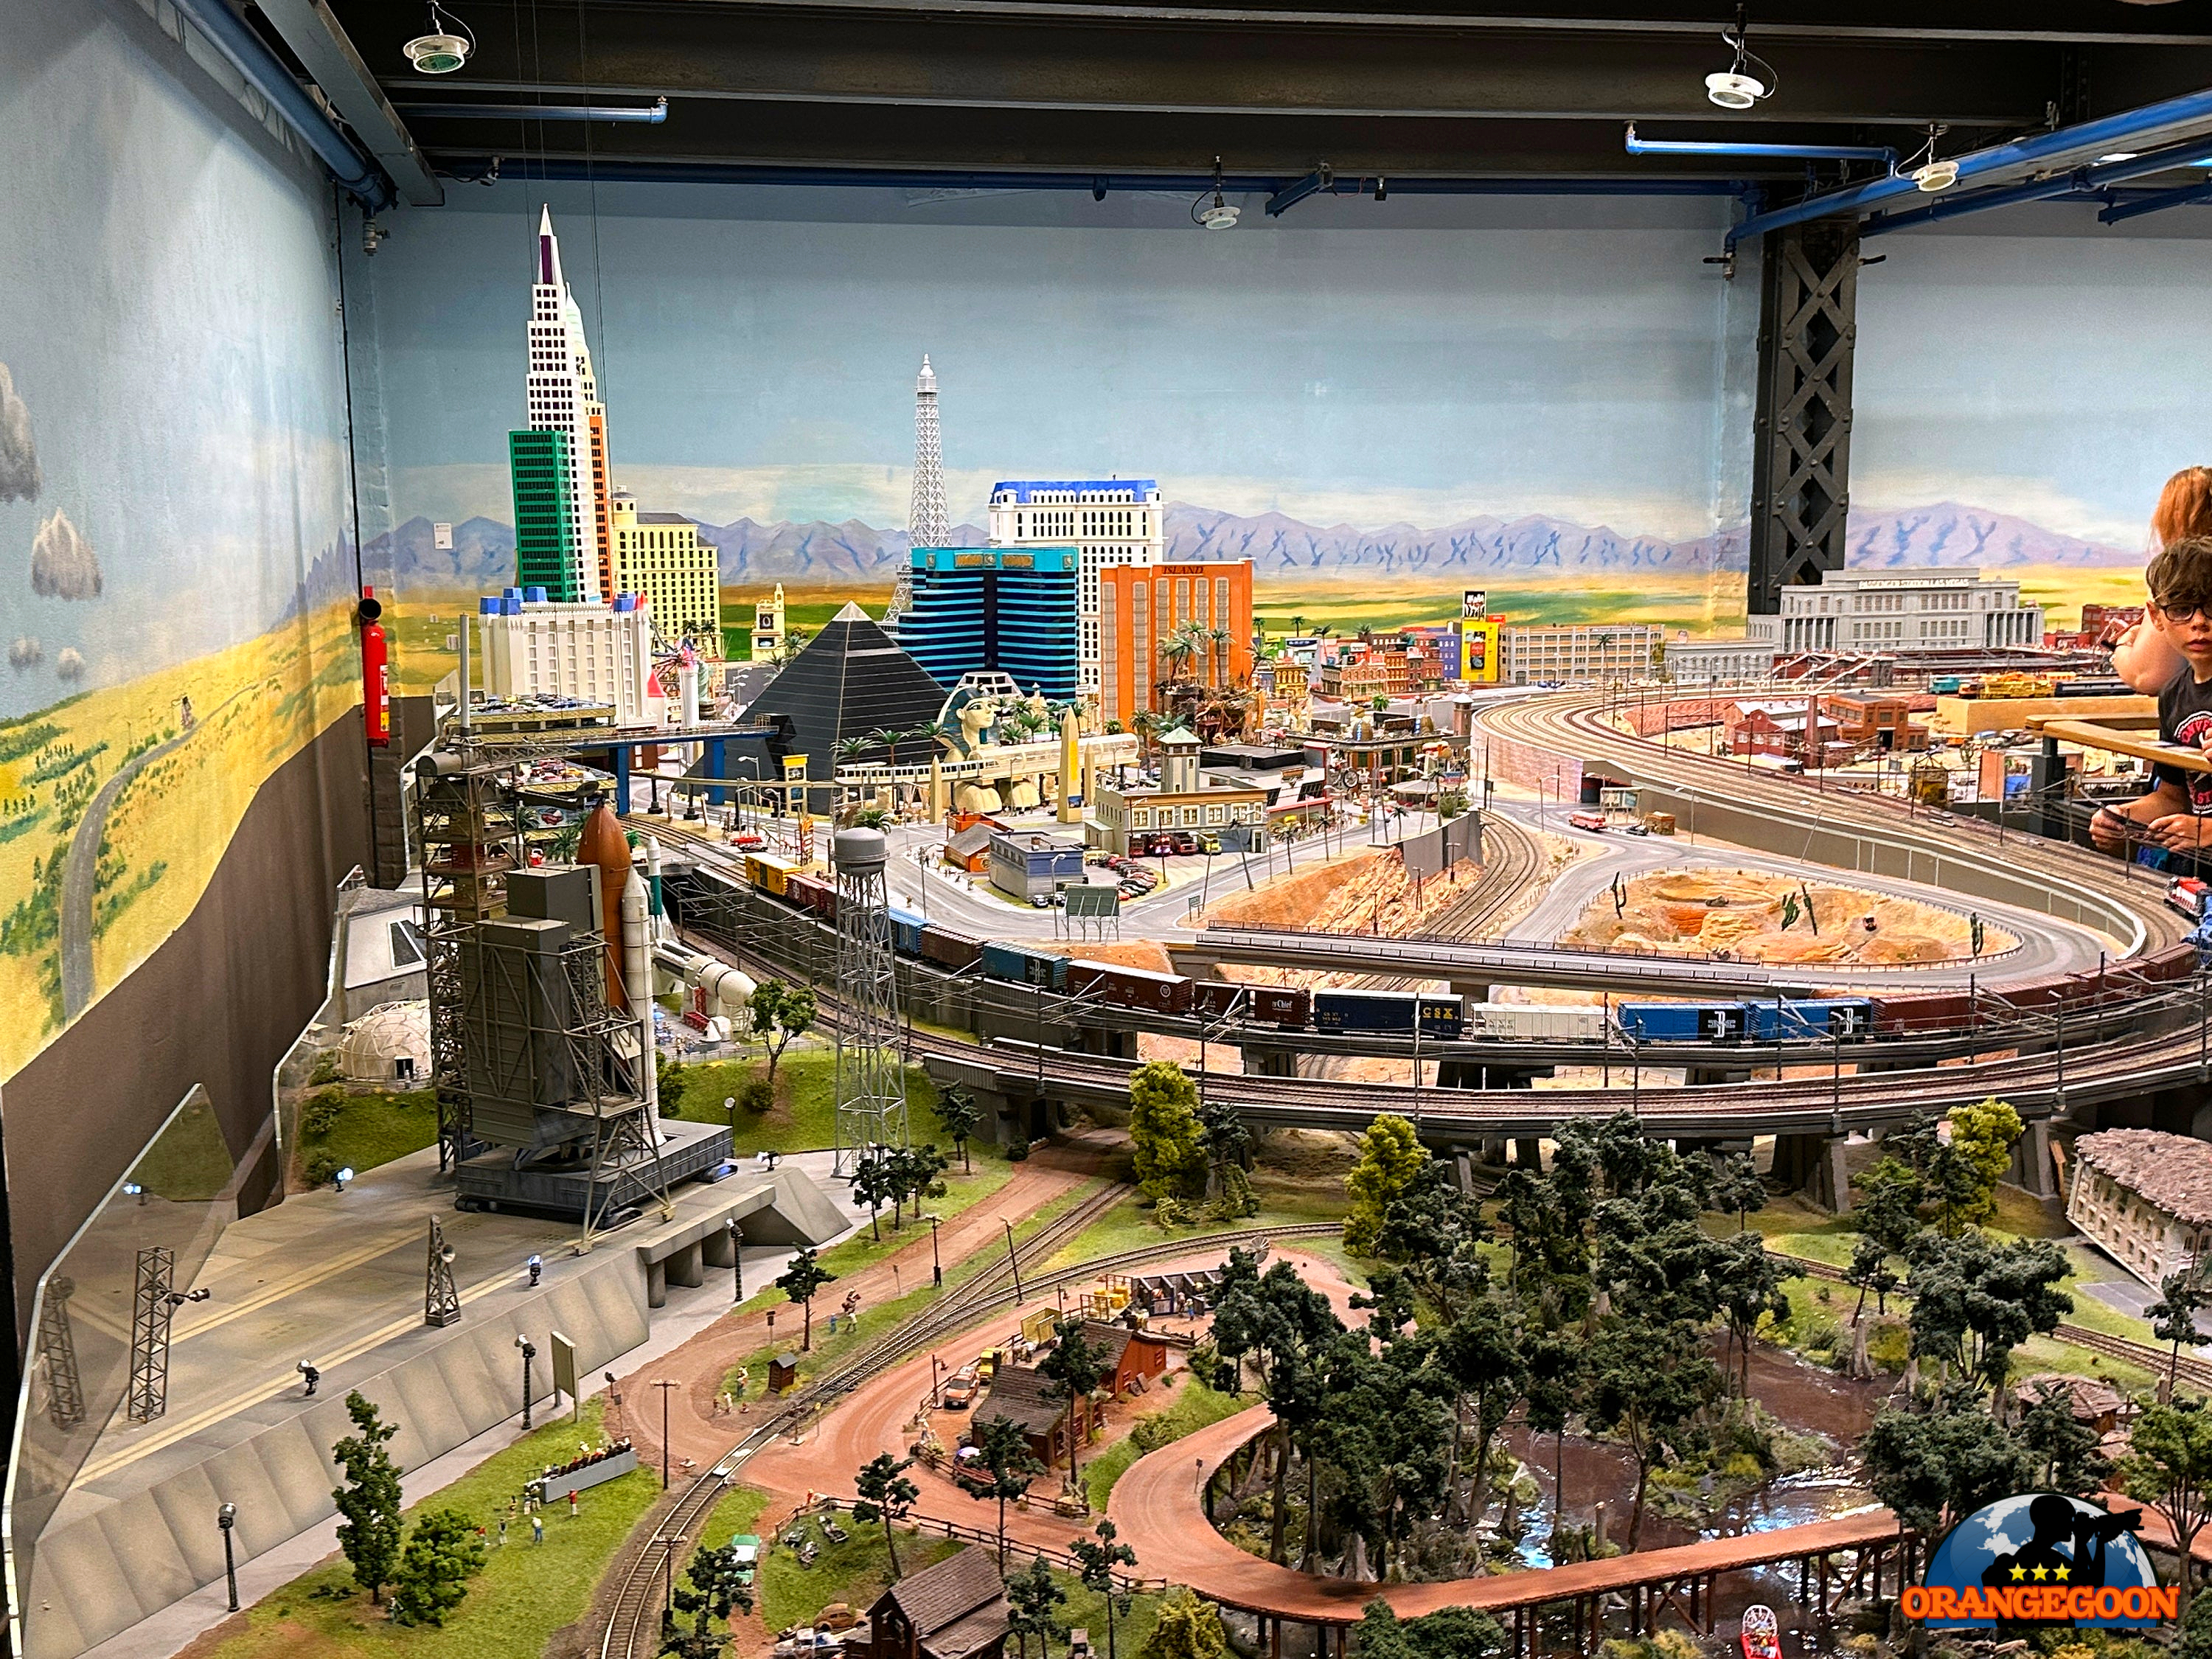 [블로그 박물관 여행 / 독일 함부르크] 슈파이어슈타트의 옛 창고에 만들어진 작지만 큰 세상! 세계를 한 눈에! 미니어처 원더랜드 Miniatur Wunderland <7/10>